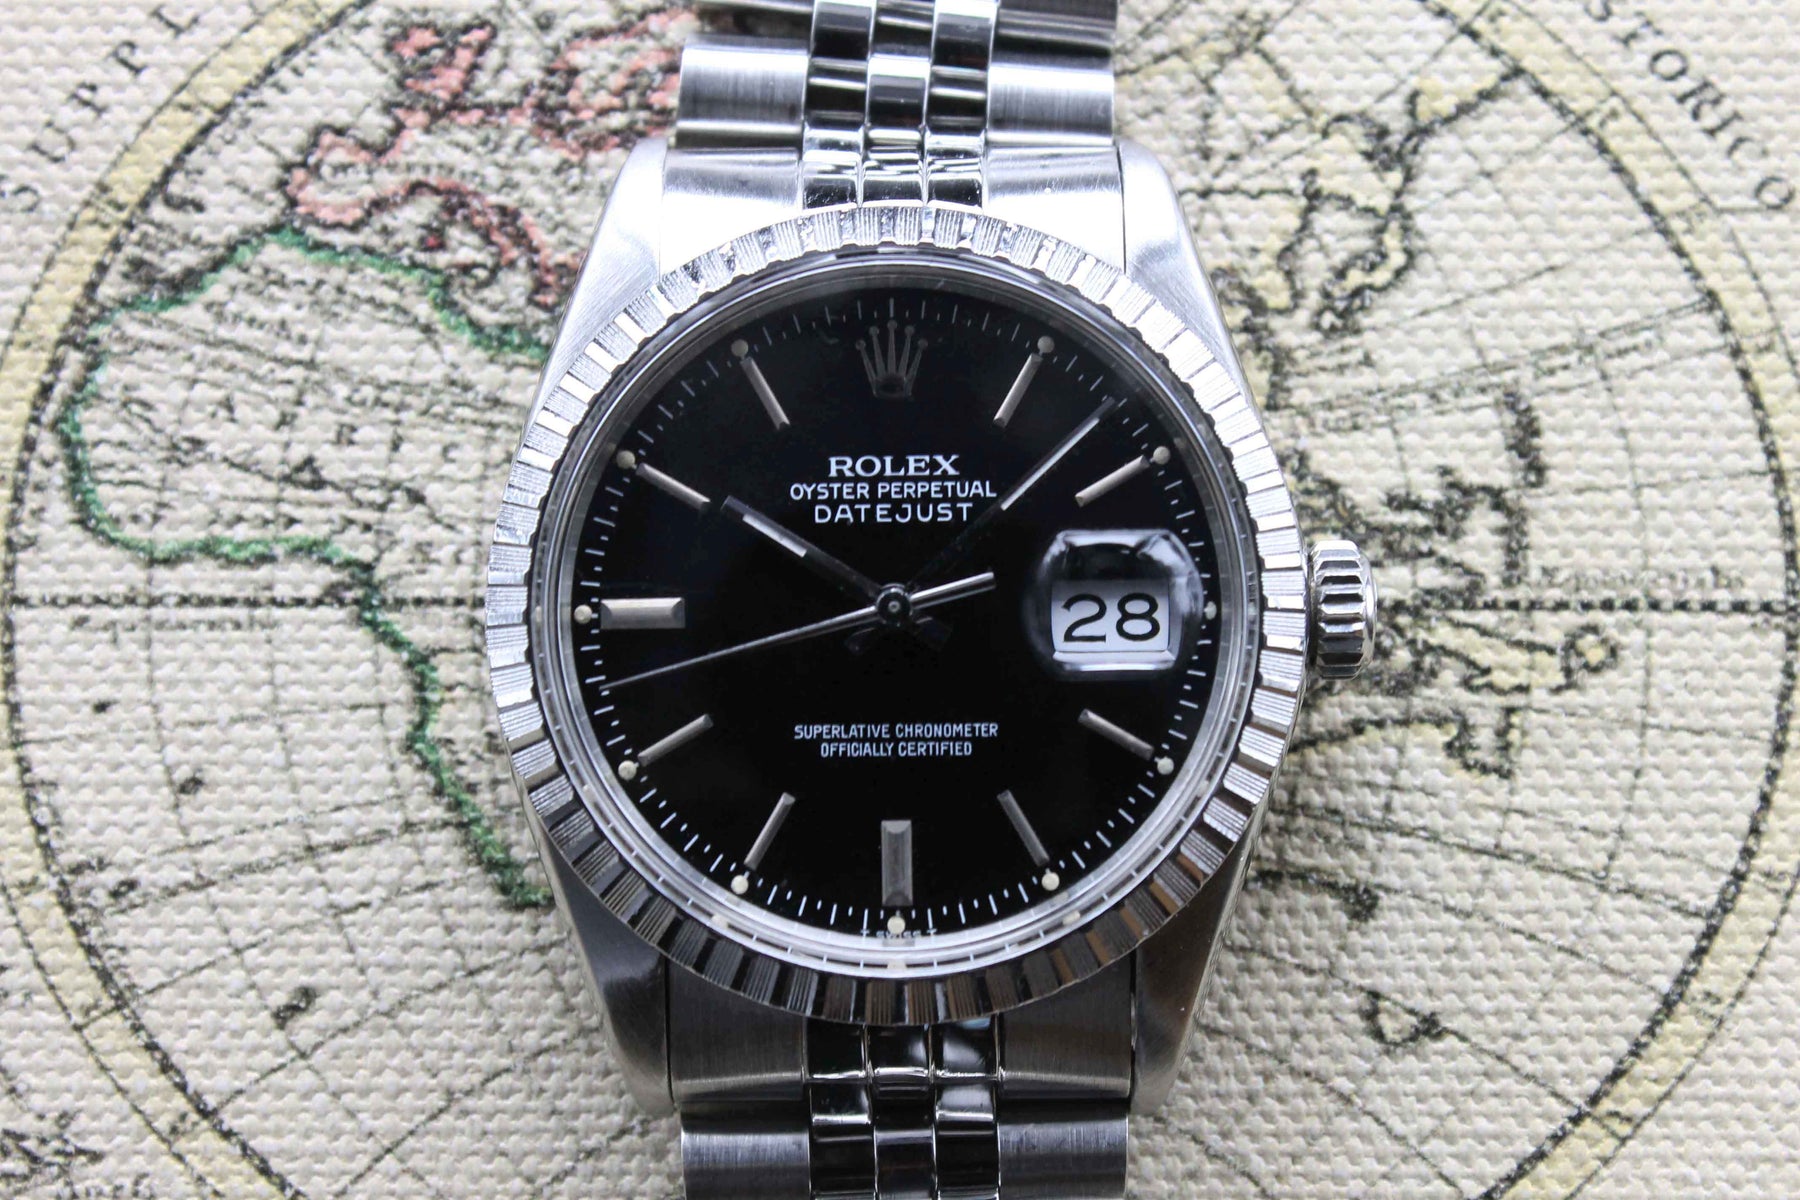 1987 Rolex Datejust Ref. 16030 (Full Set)